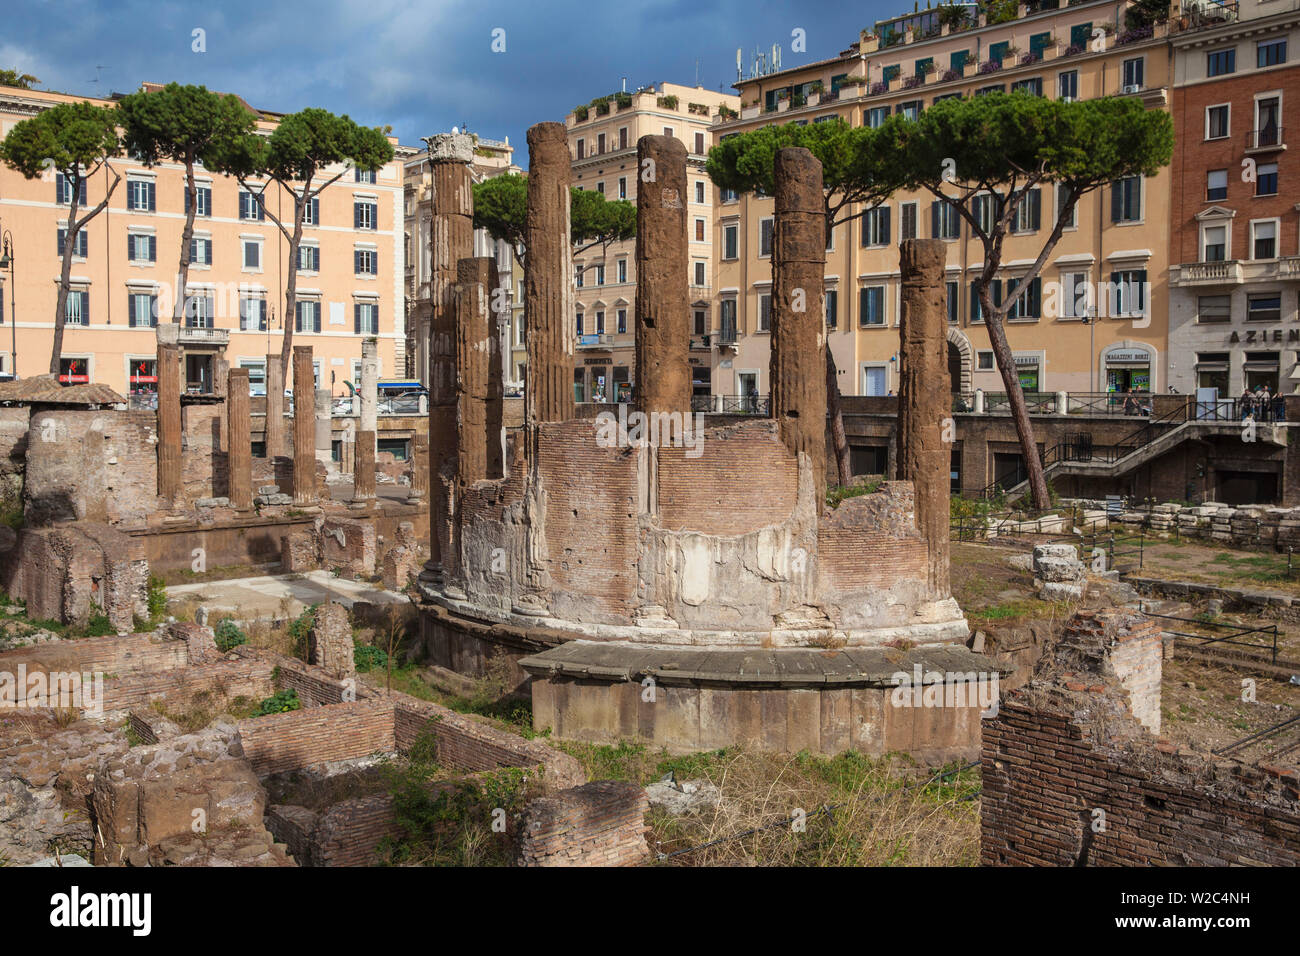 Italy, Lazio, Rome, Largo di Torre Argentina, Roman temple ruins Stock Photo